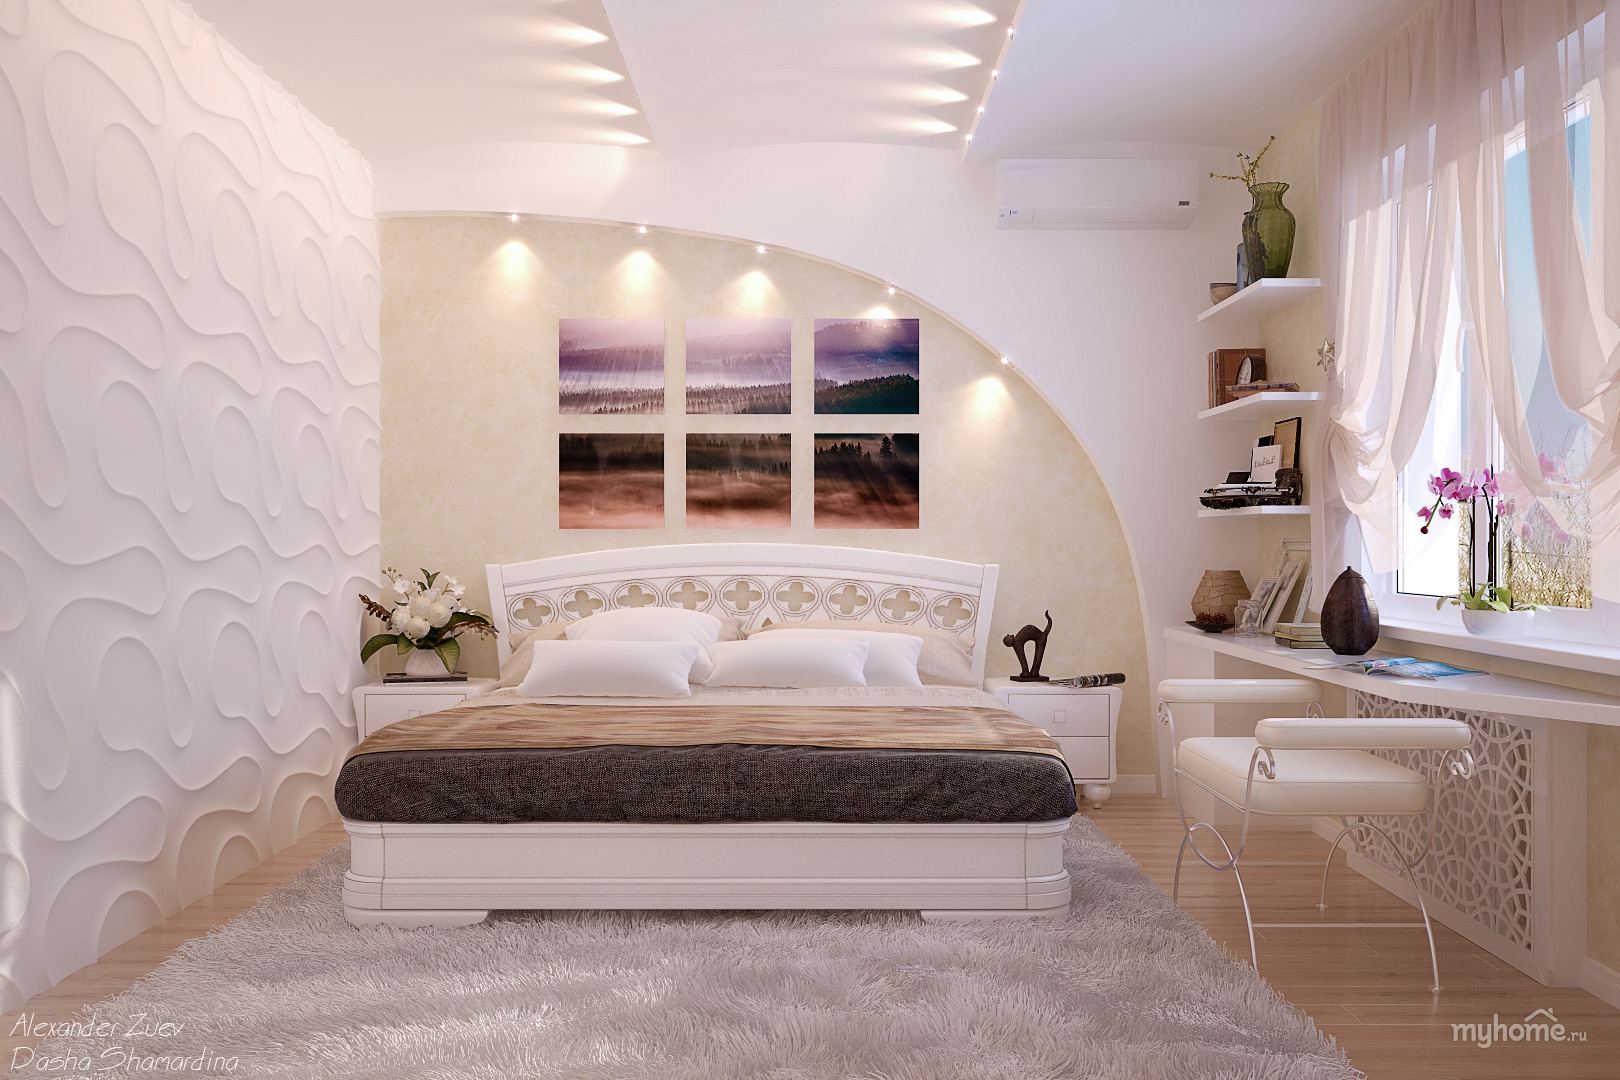  спальни в частном доме фото » Современный дизайн на Vip-1gl